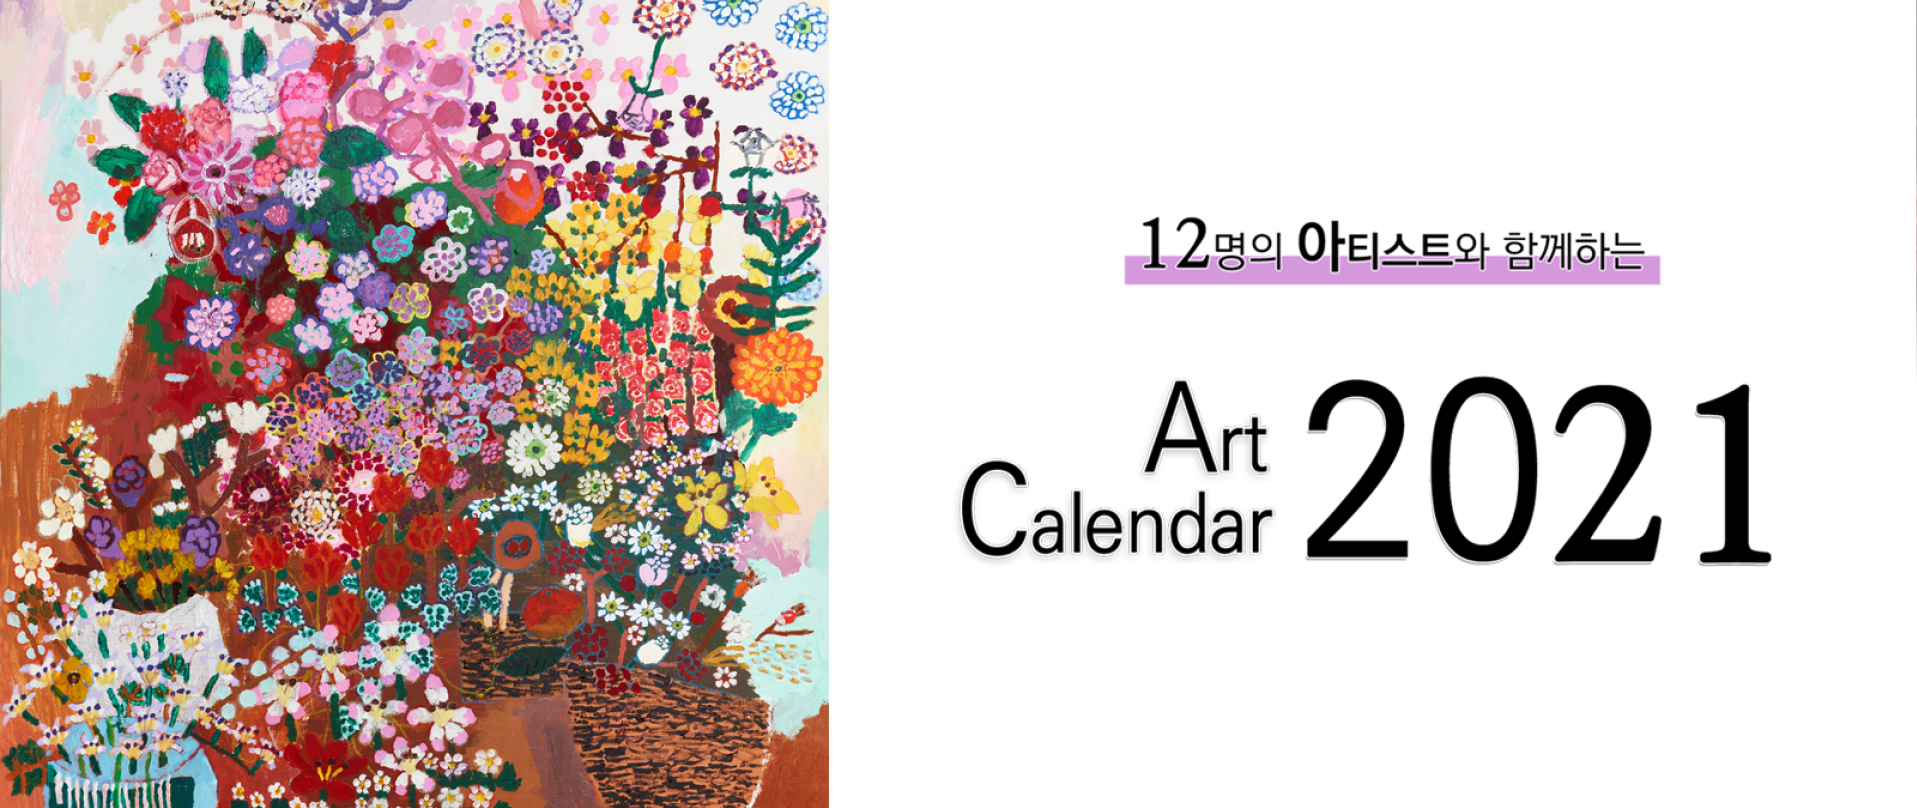 Art Calendar 2021 전시회 